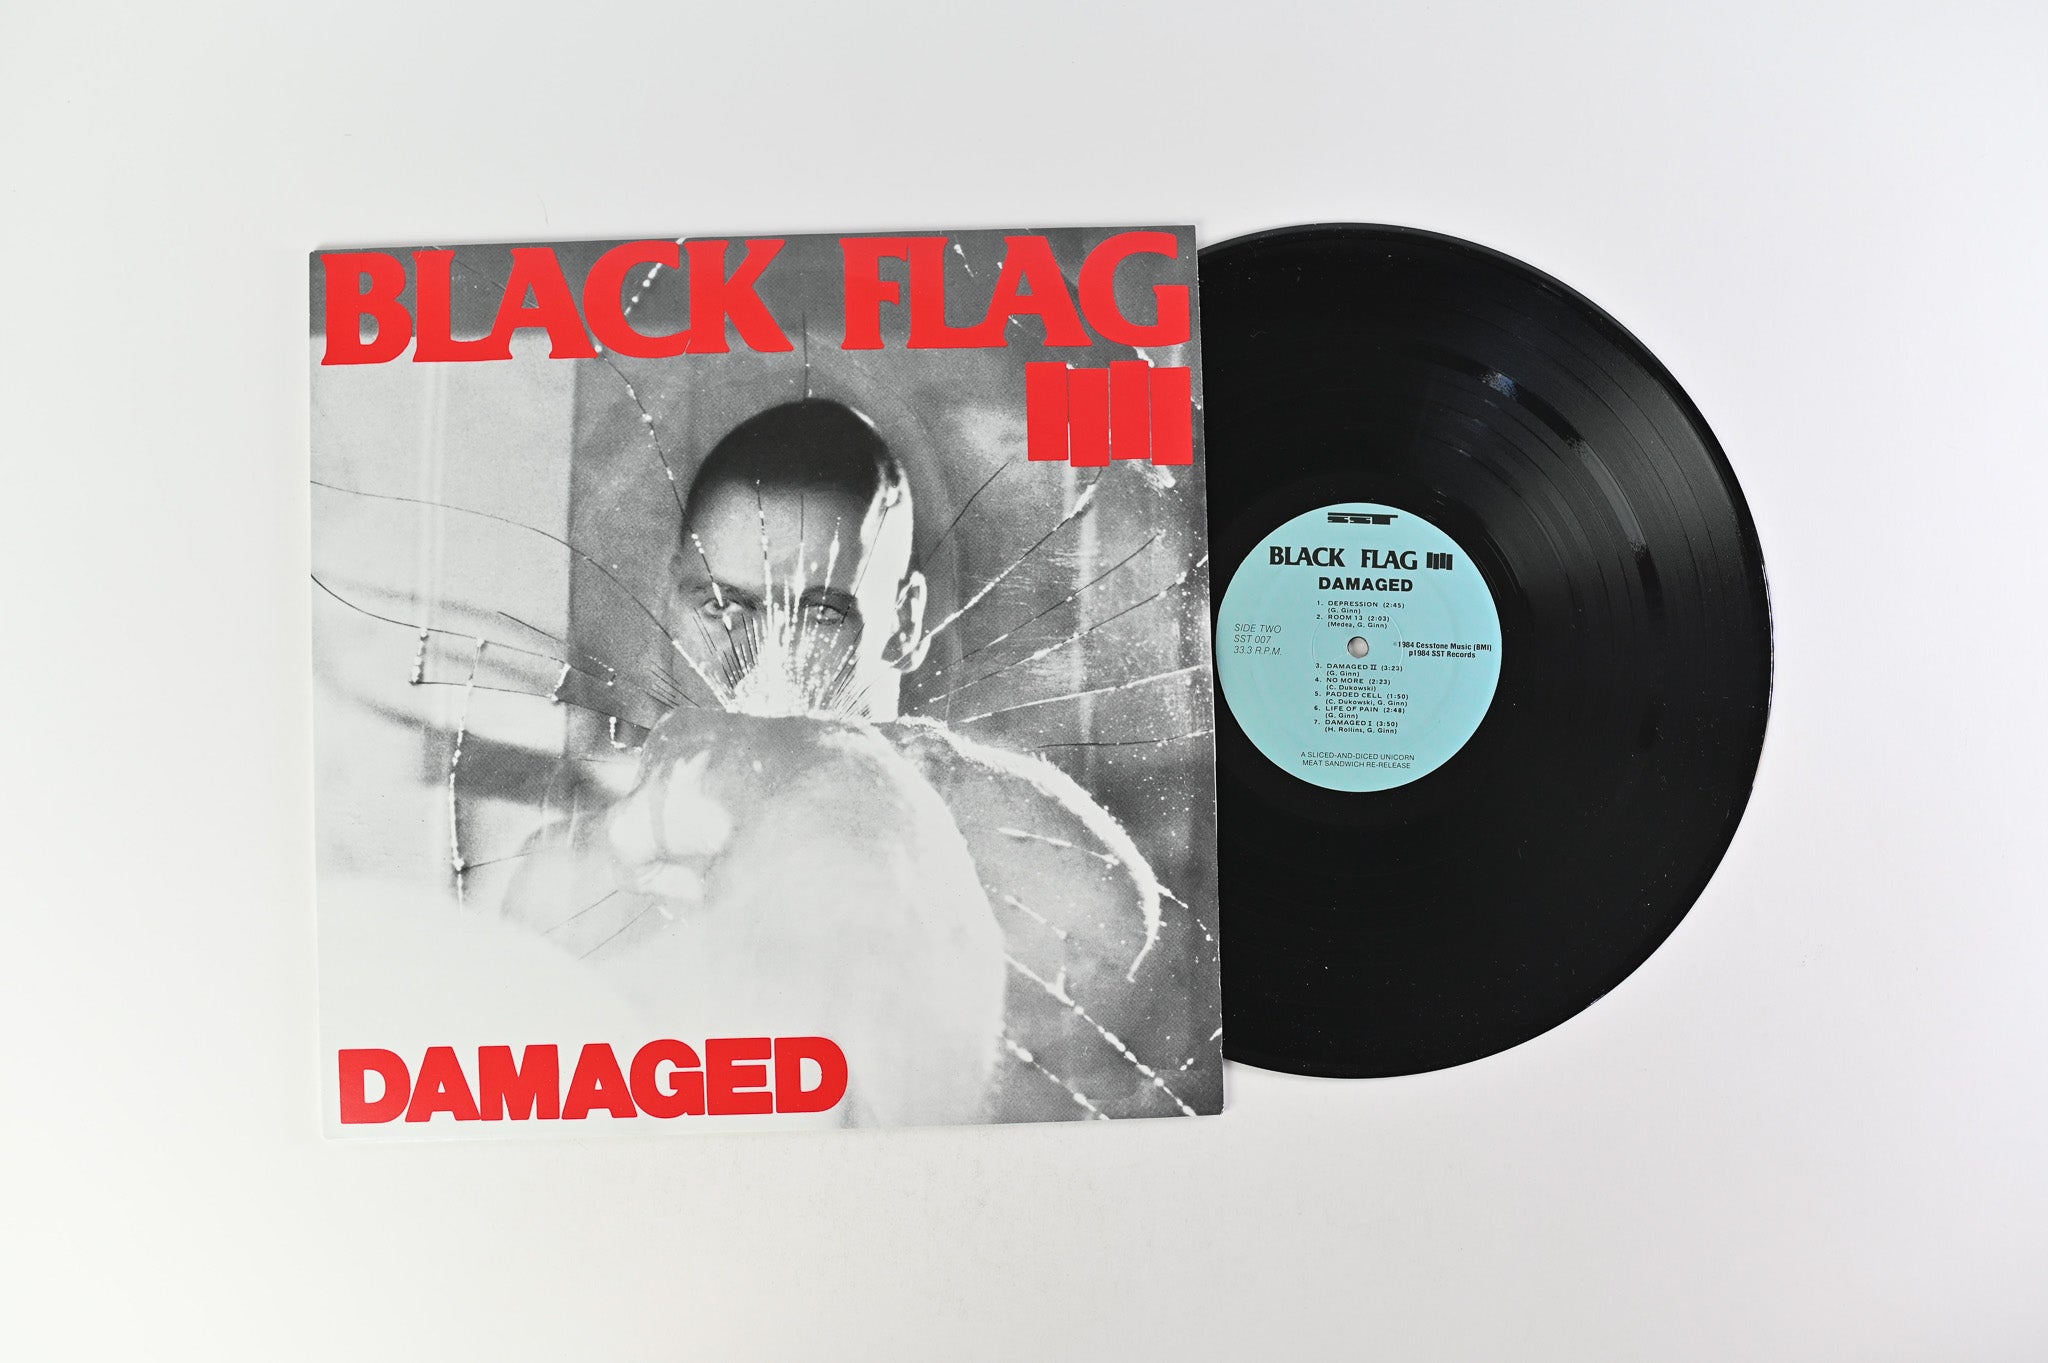 Black Flag - Damaged on SST Repress